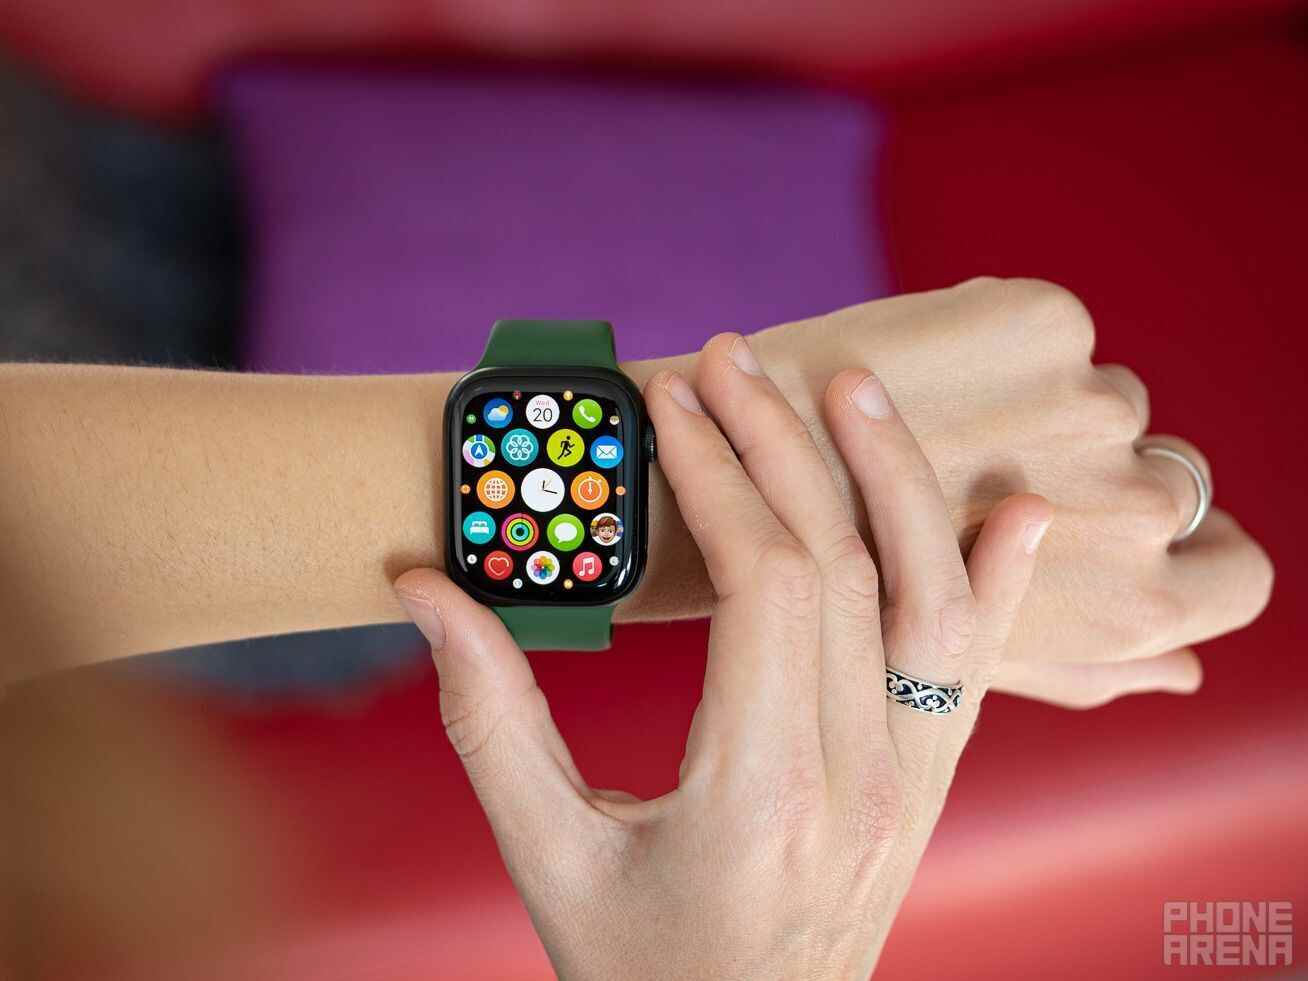 On McDolar, sahte Apple Watch'ta bu kadar çok uygulamanın olmadığını söylüyor!  |  Resim kredisi - PhoneArena - Bu havaalanında ne kadar çok AirPods ve Apple Watch sahte ele geçirildiğine inanamayacaksınız